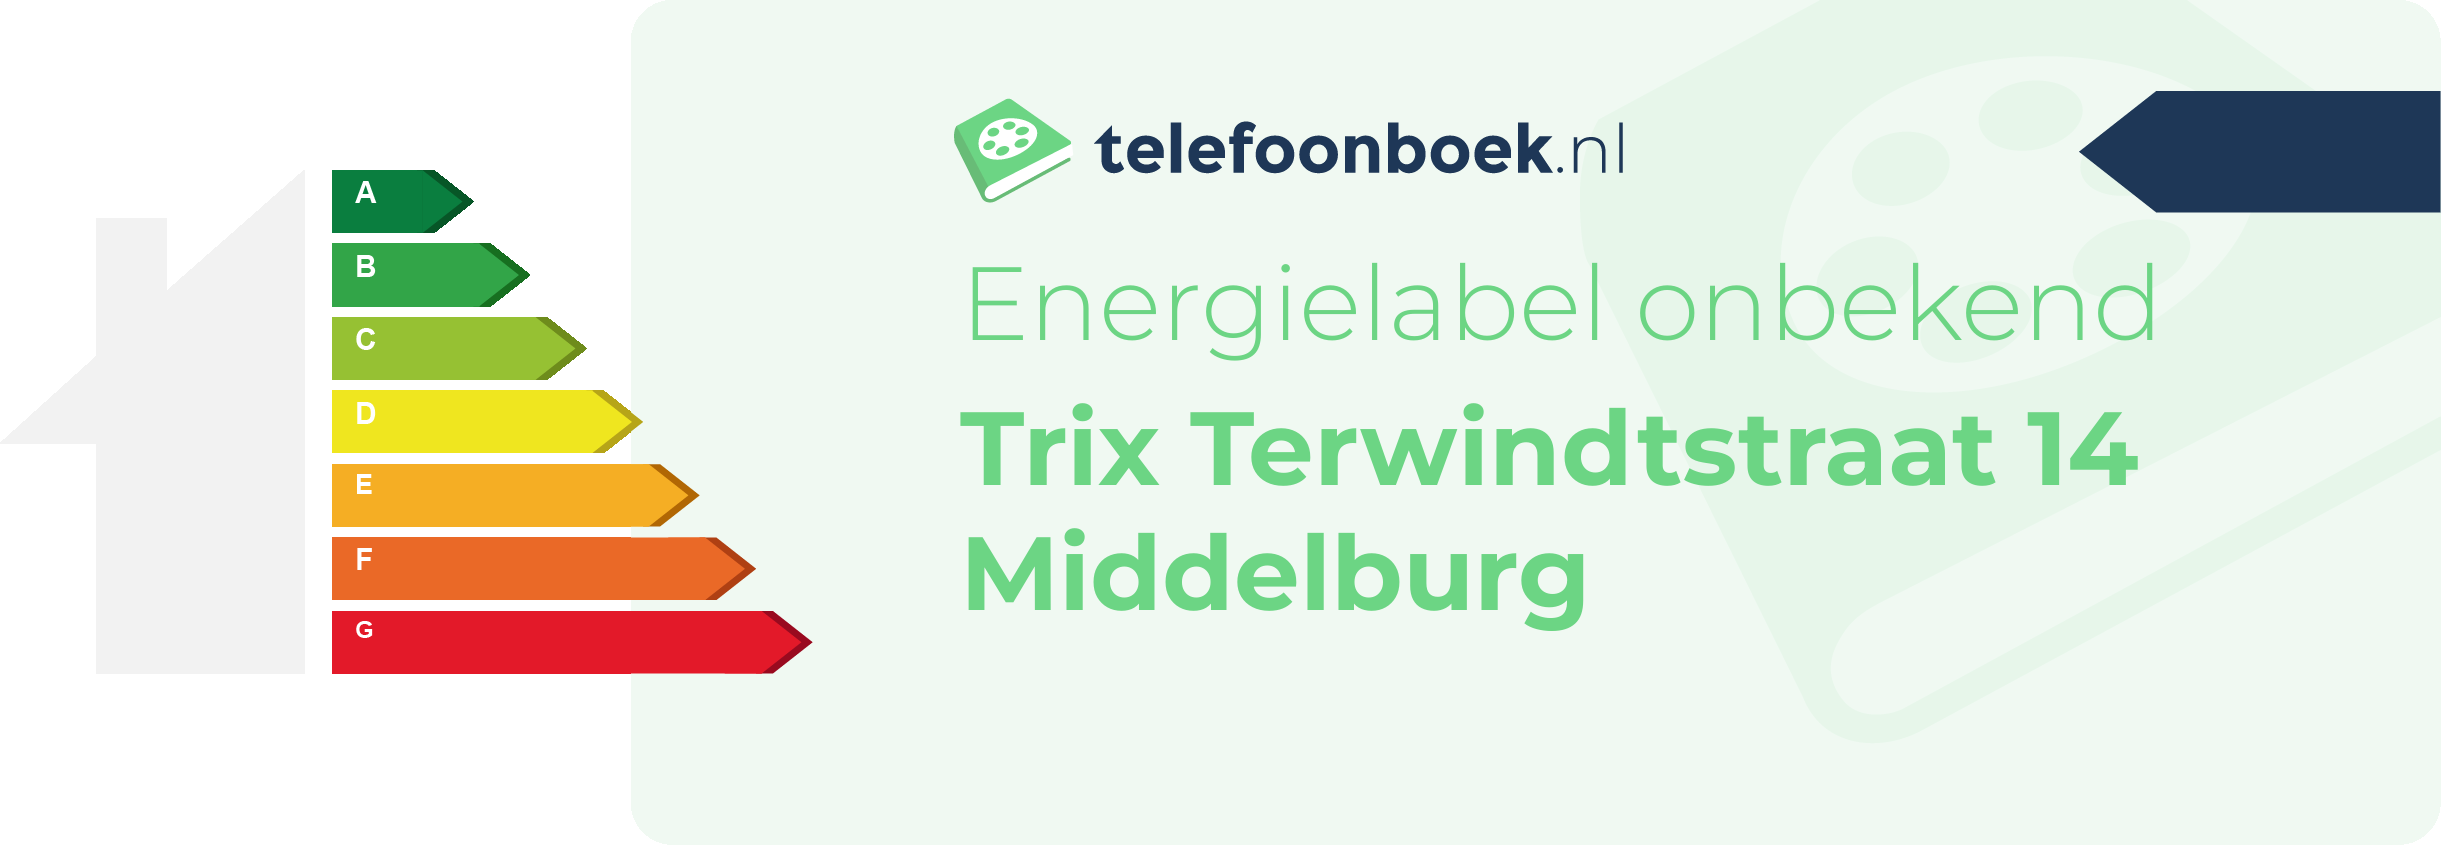 Energielabel Trix Terwindtstraat 14 Middelburg